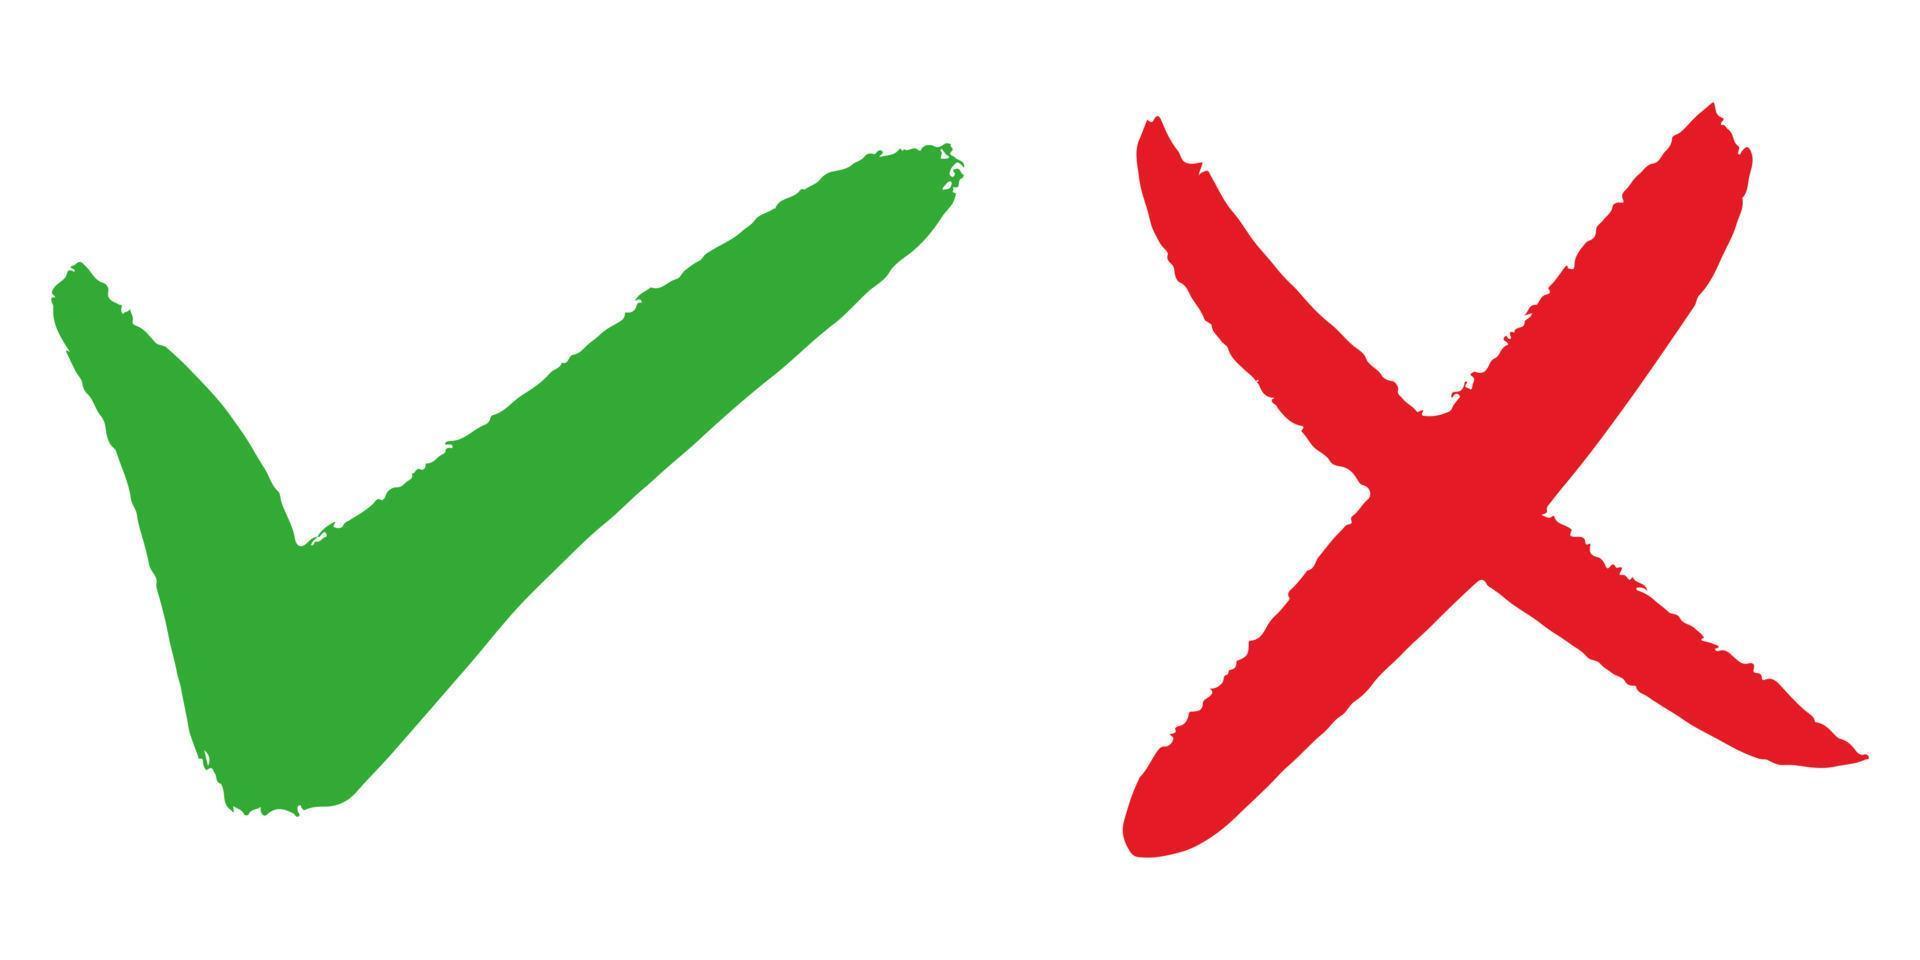 rätt och fel ikon. handritad av grön bock och rött kors isolerad på vit bakgrund. vektor illustration.